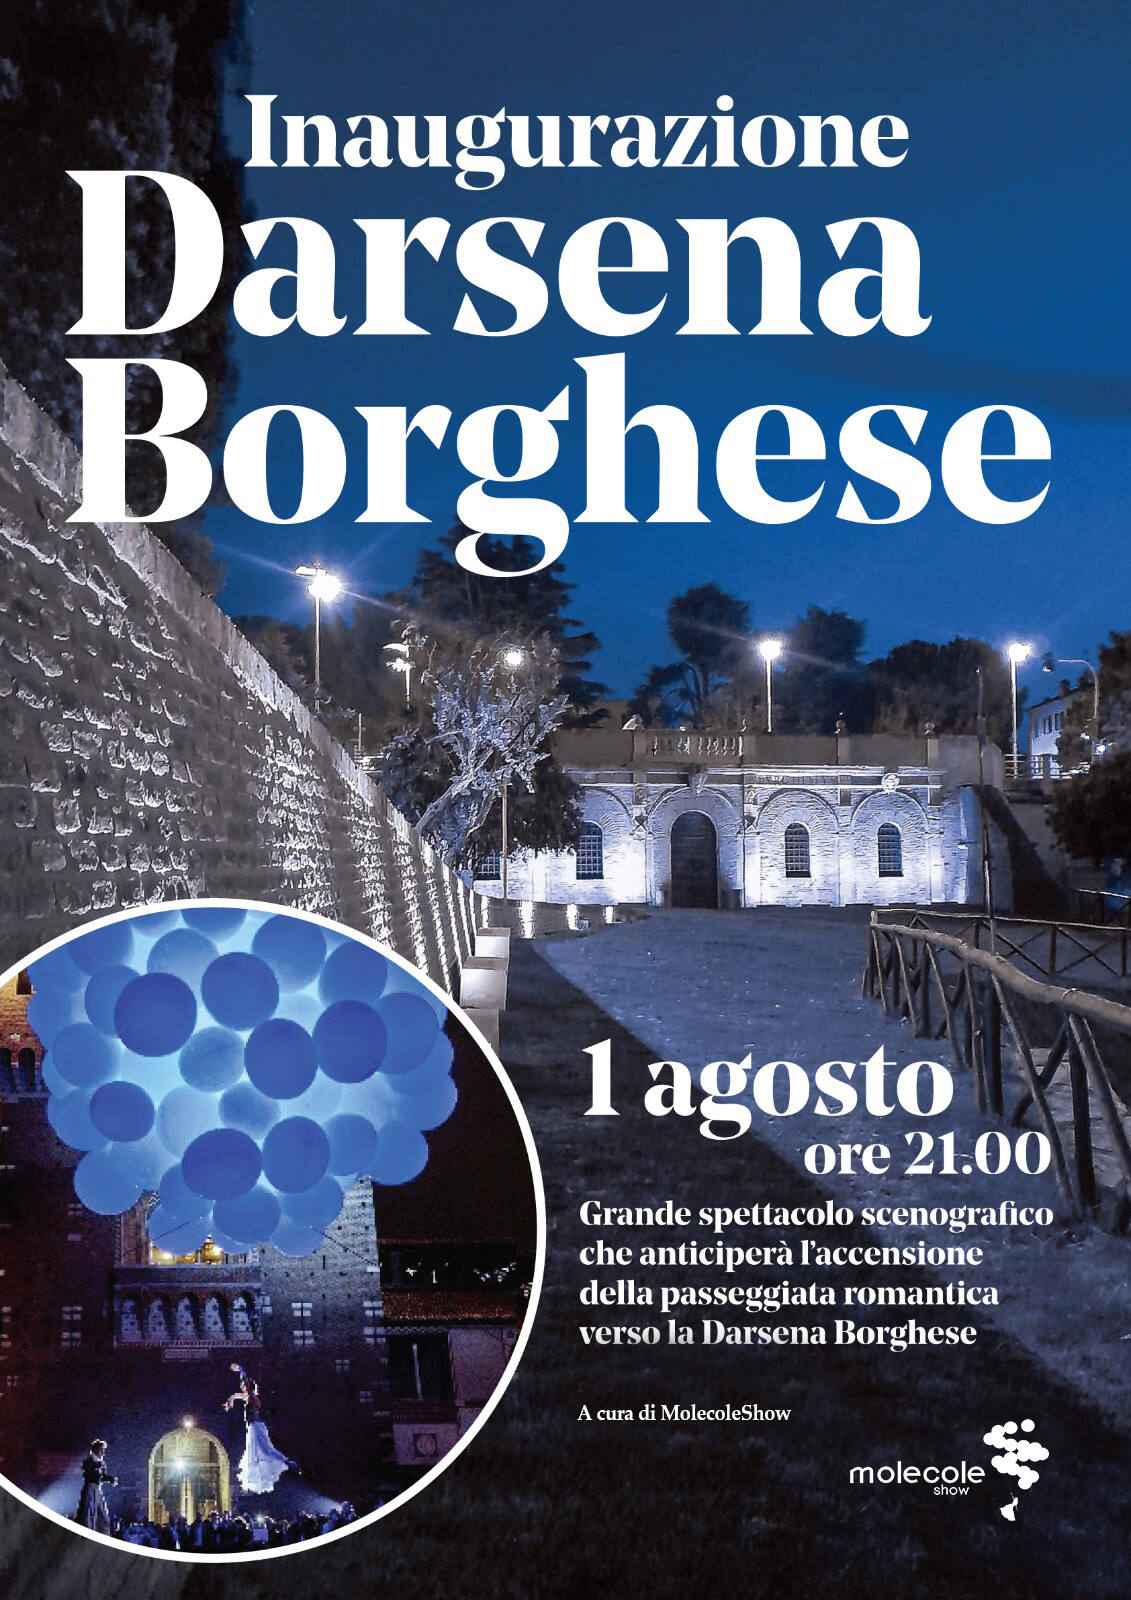 La Darsena Borghese illumina la città